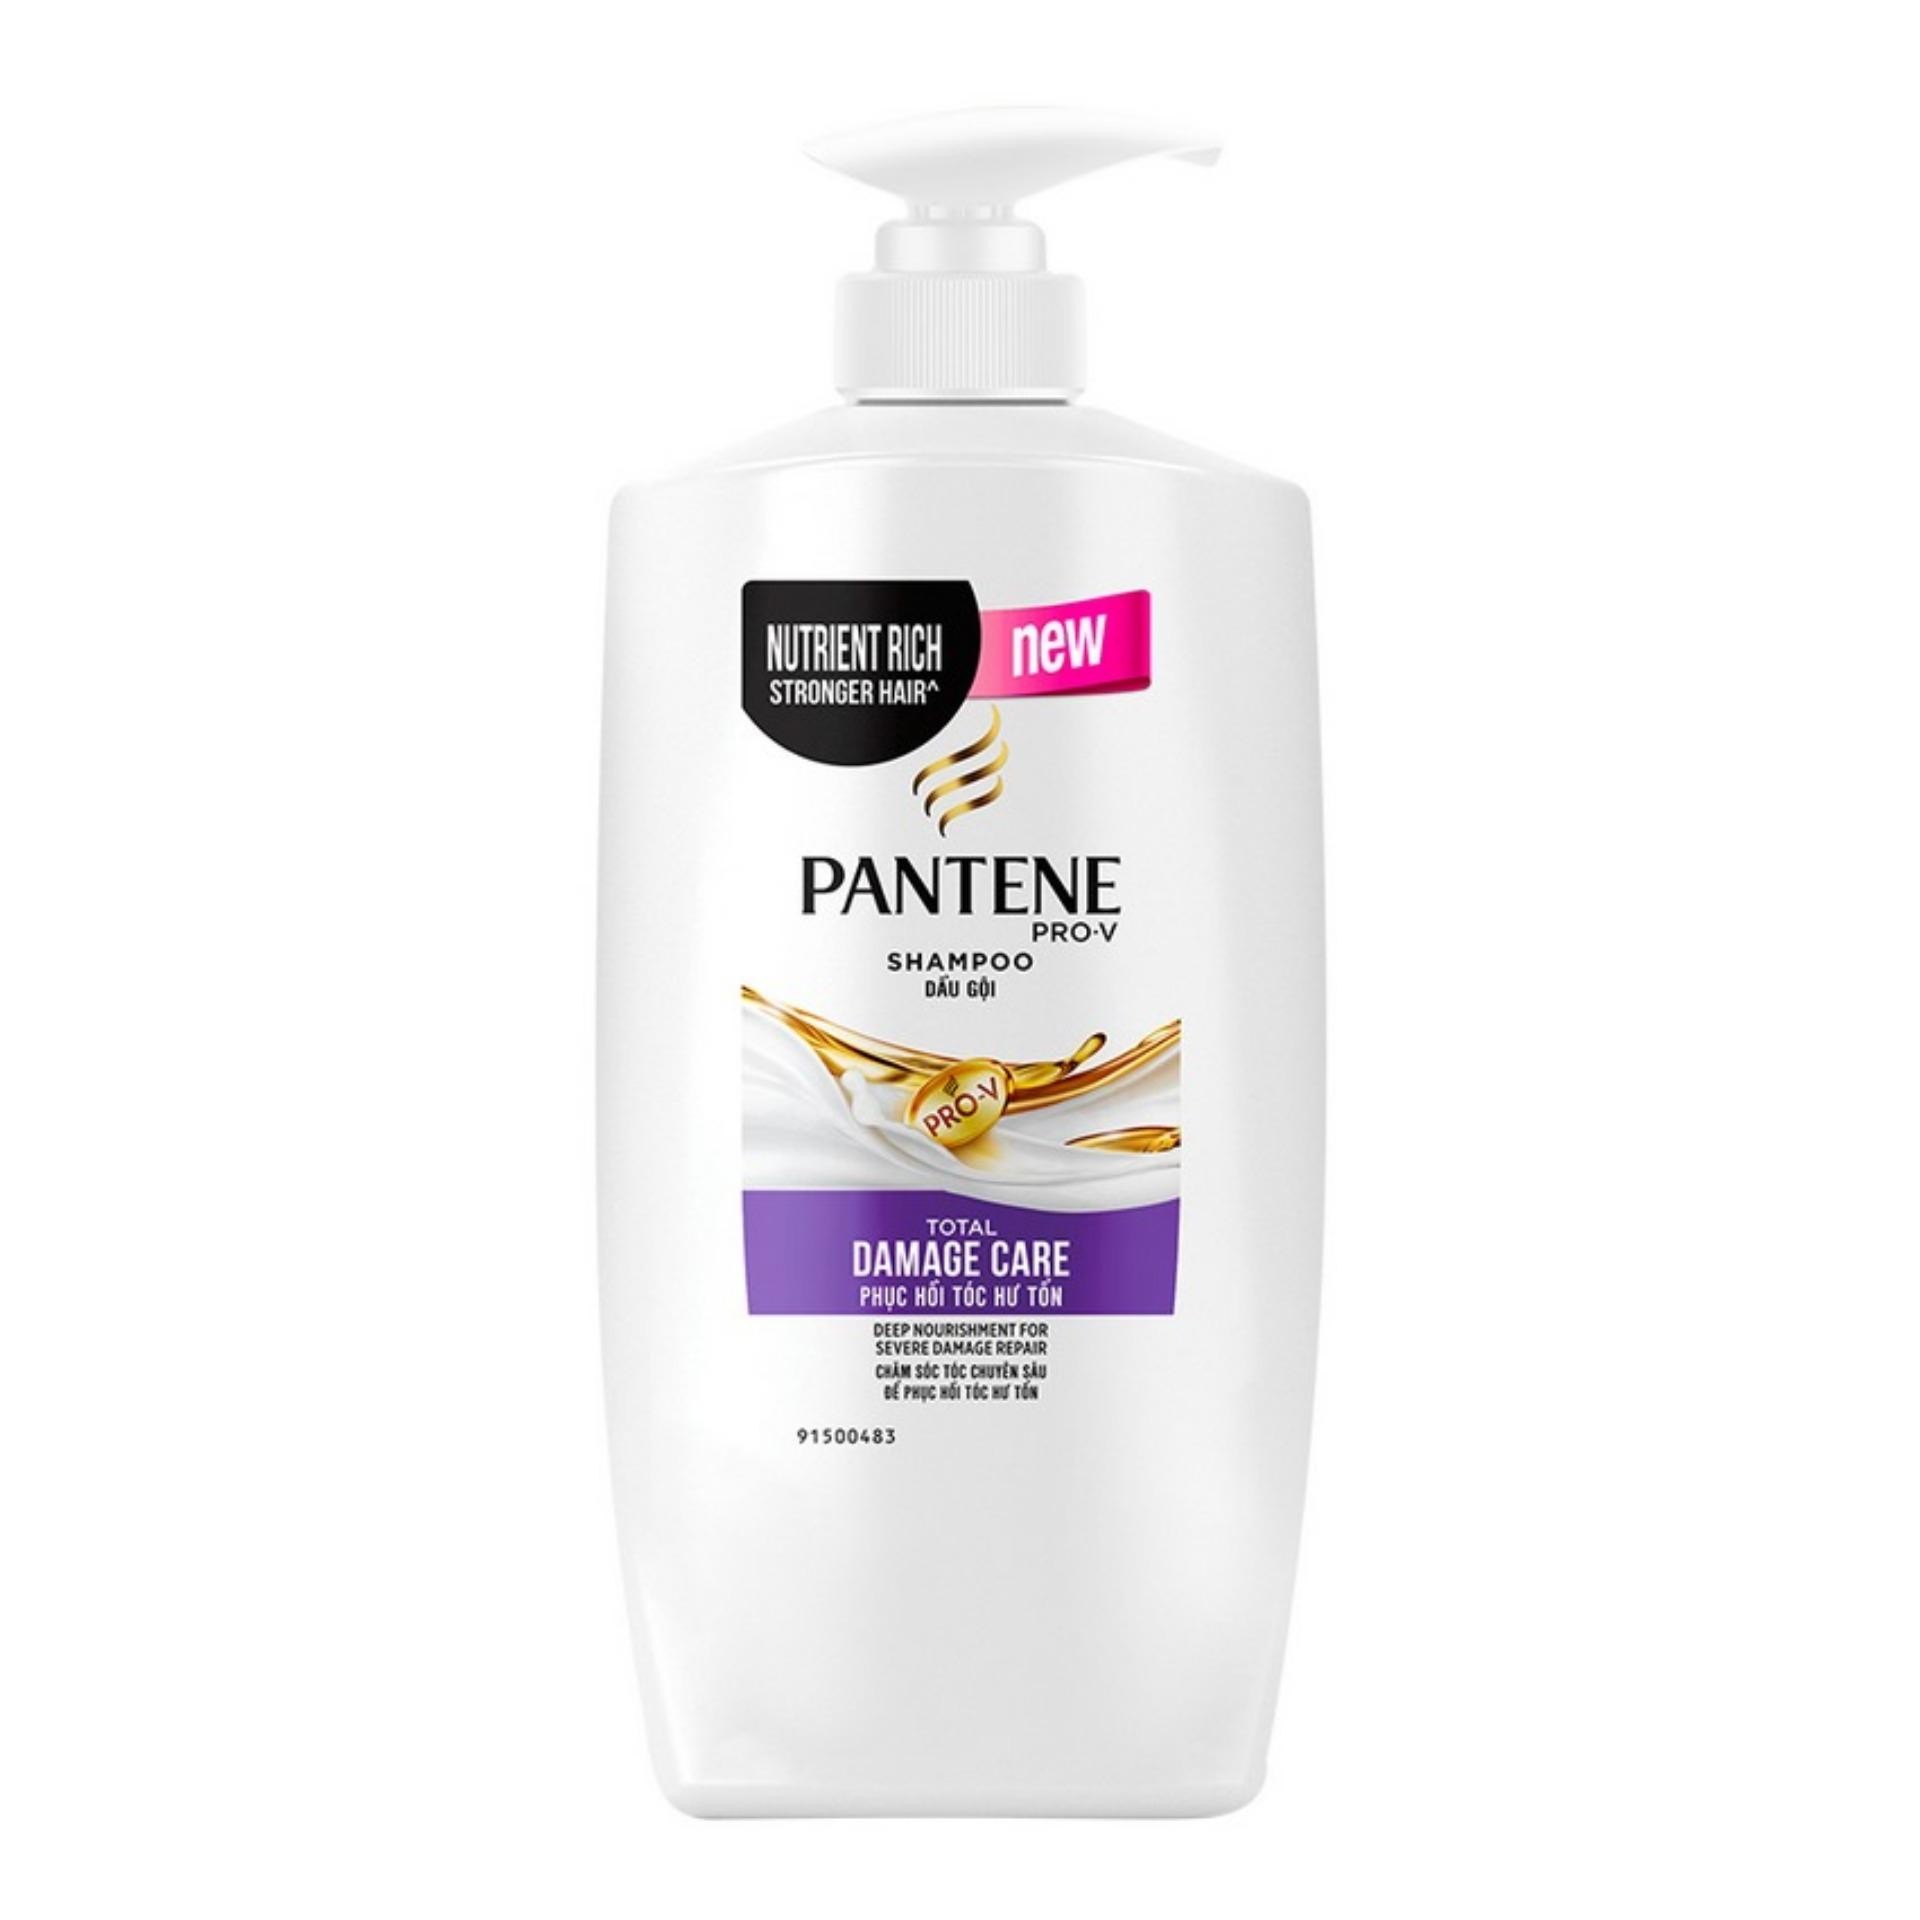 Công thức Pro-V nổi tiếng của Pantene giúp cung cấp những dưỡng chất nuôi dưỡng tóc. Dầu gội có khả năng loại bỏ 10 dấu hiệu hư tổn ở tóc, mang đến mái tóc óng mượt và chắc khỏe. 